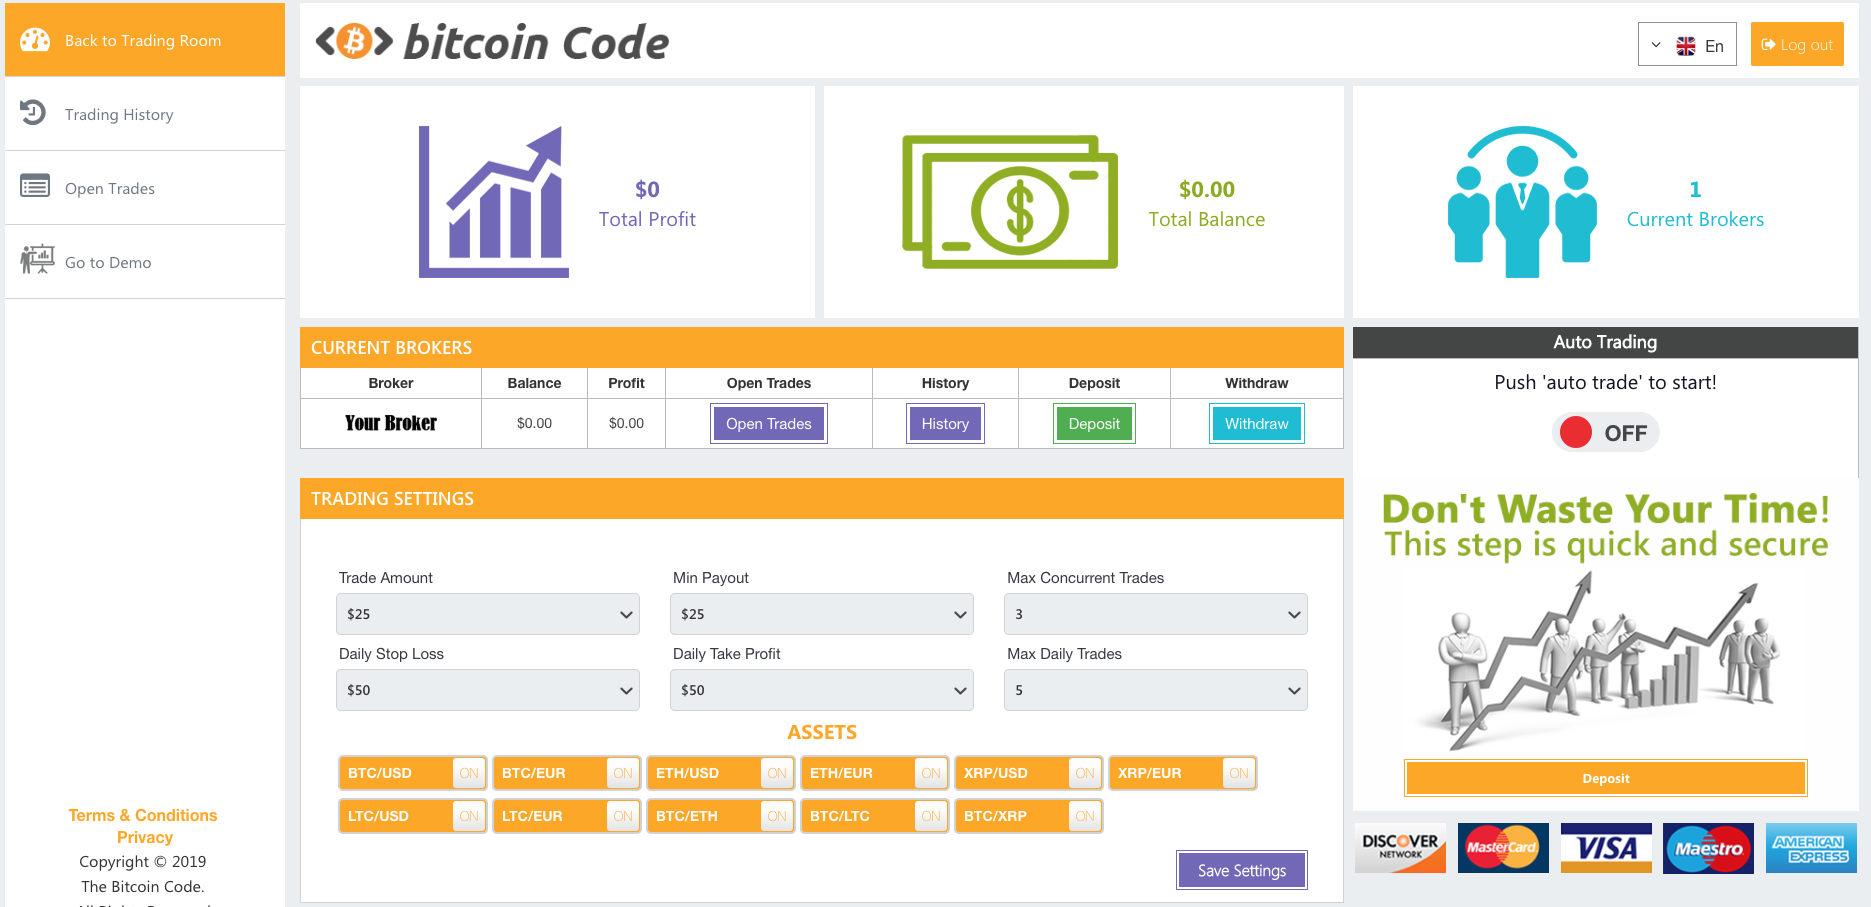 bitcoins code app per vincere soldi